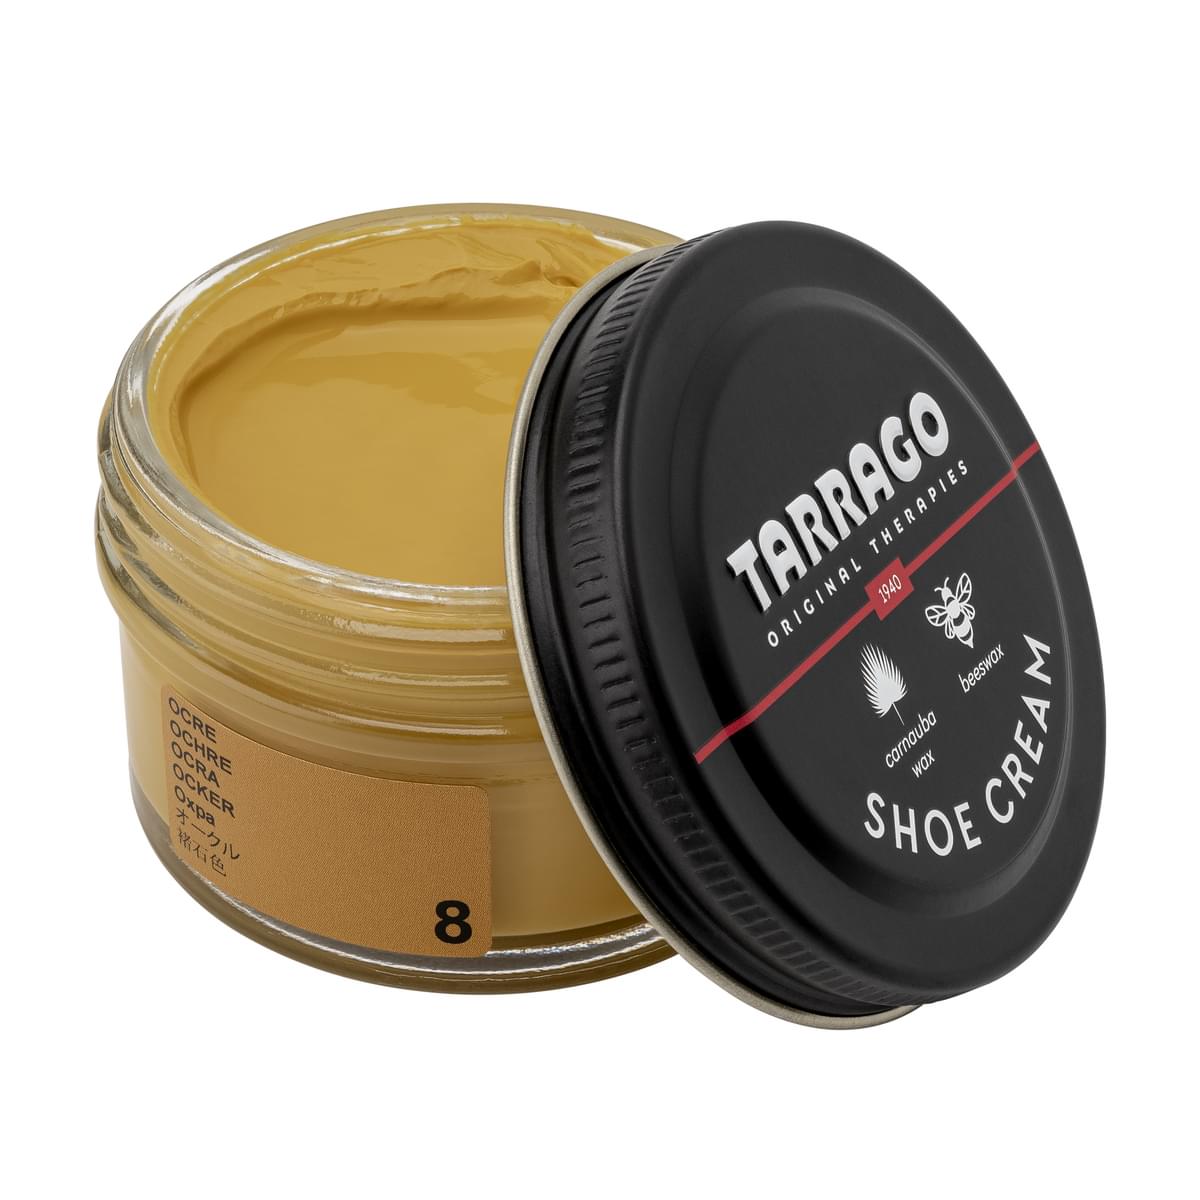 Tarrago Shoe Cream  - Ochre - 8